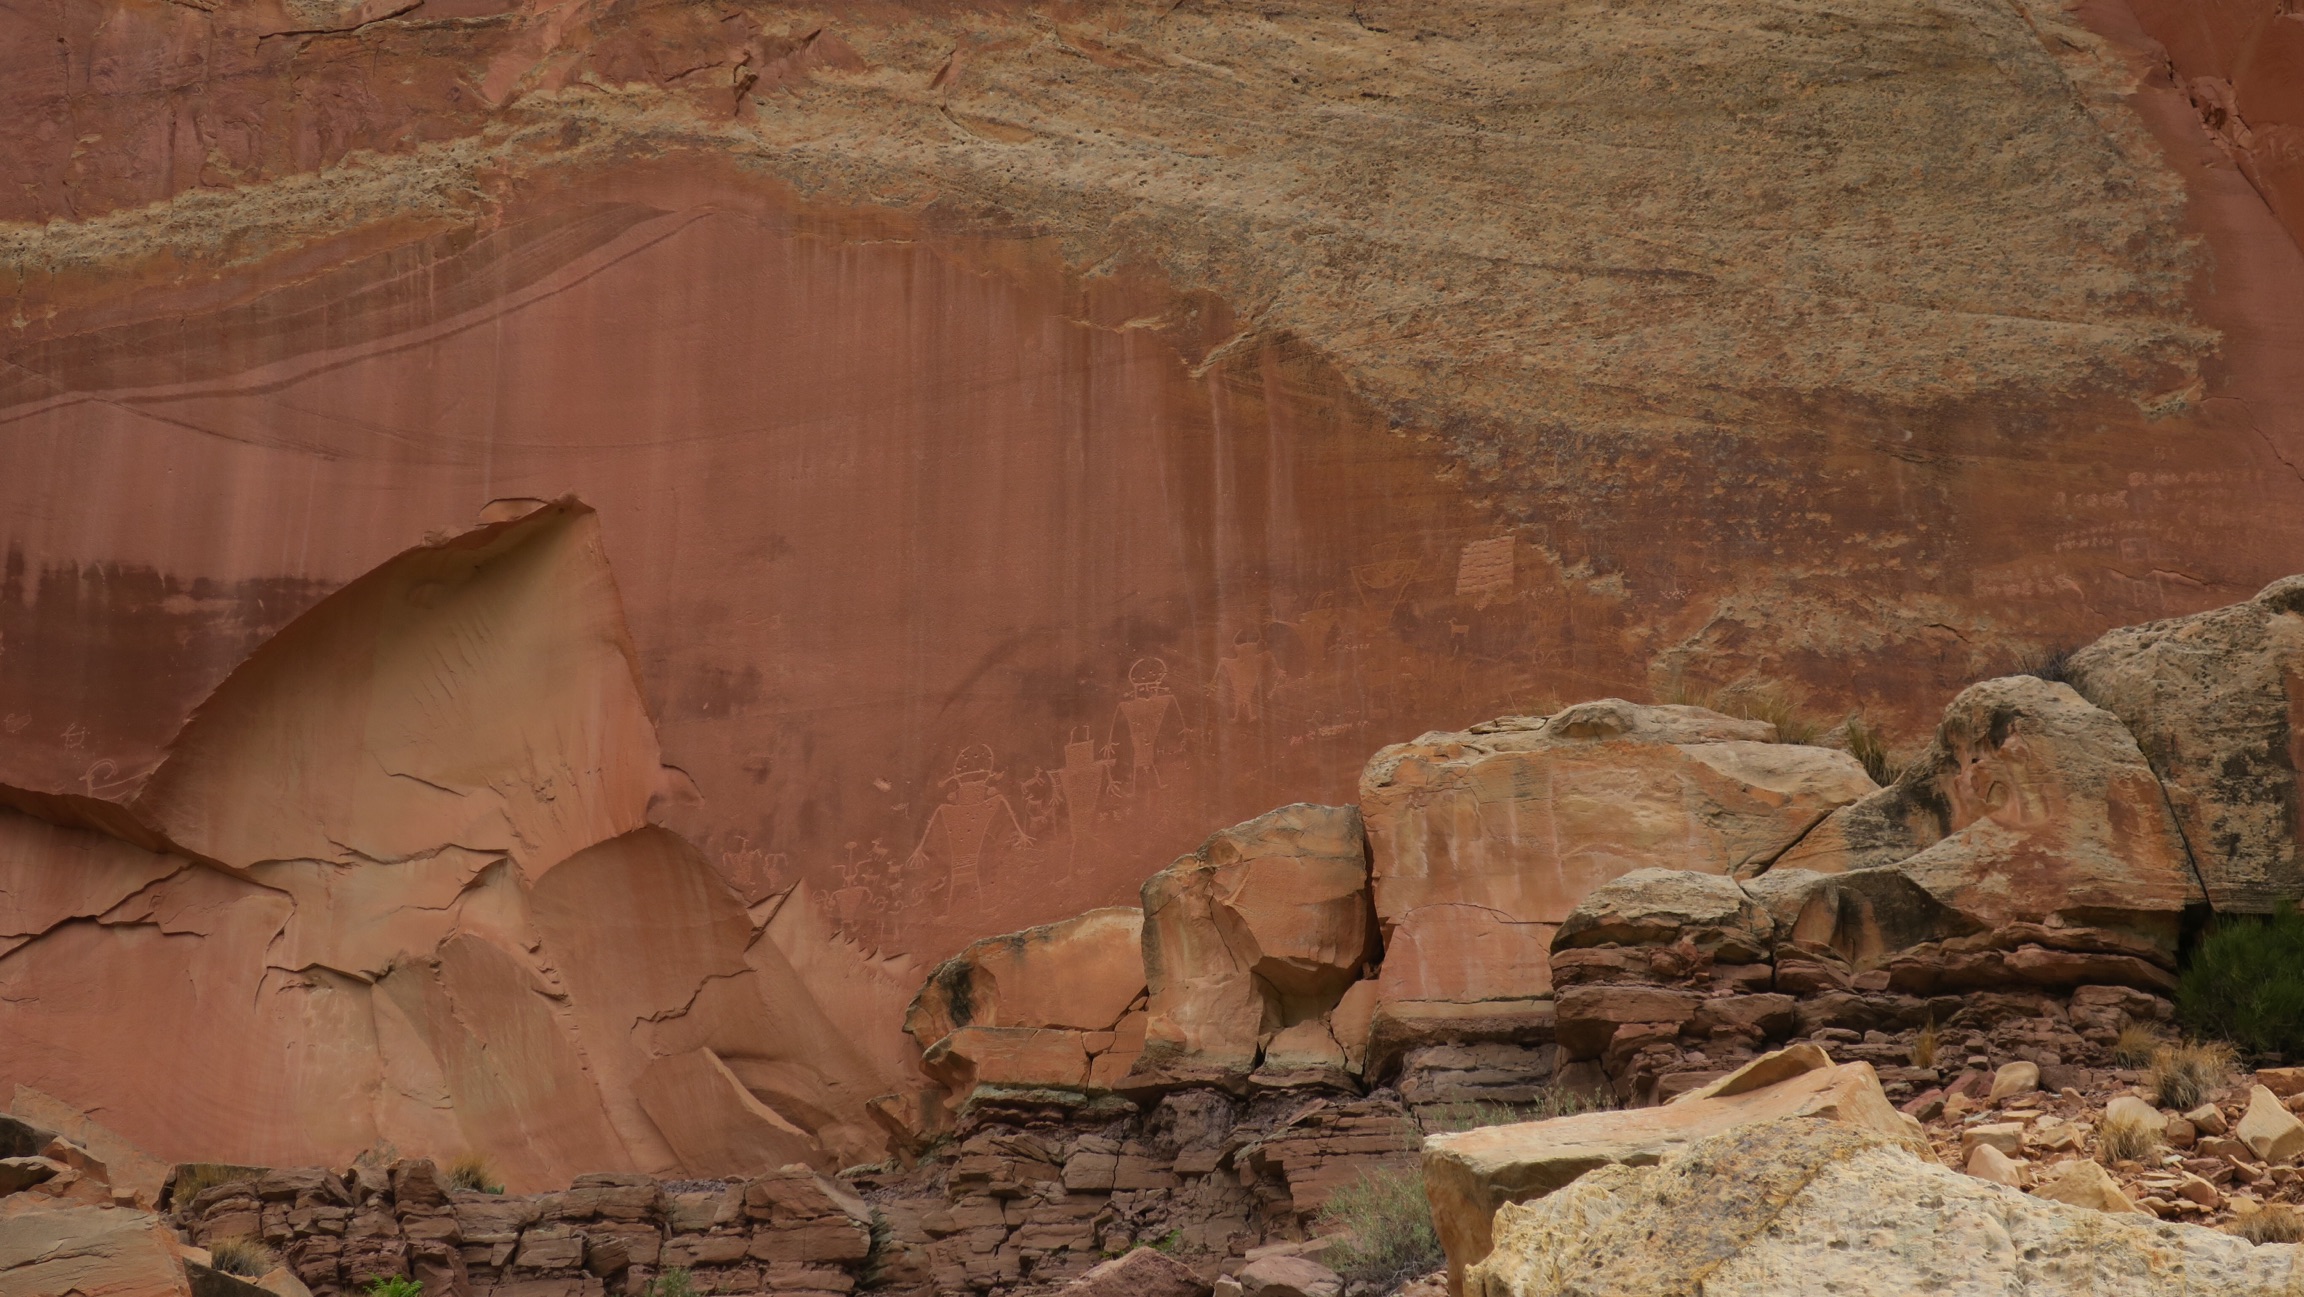 Des pétroglyphes ornent les murs du canyon par endroit